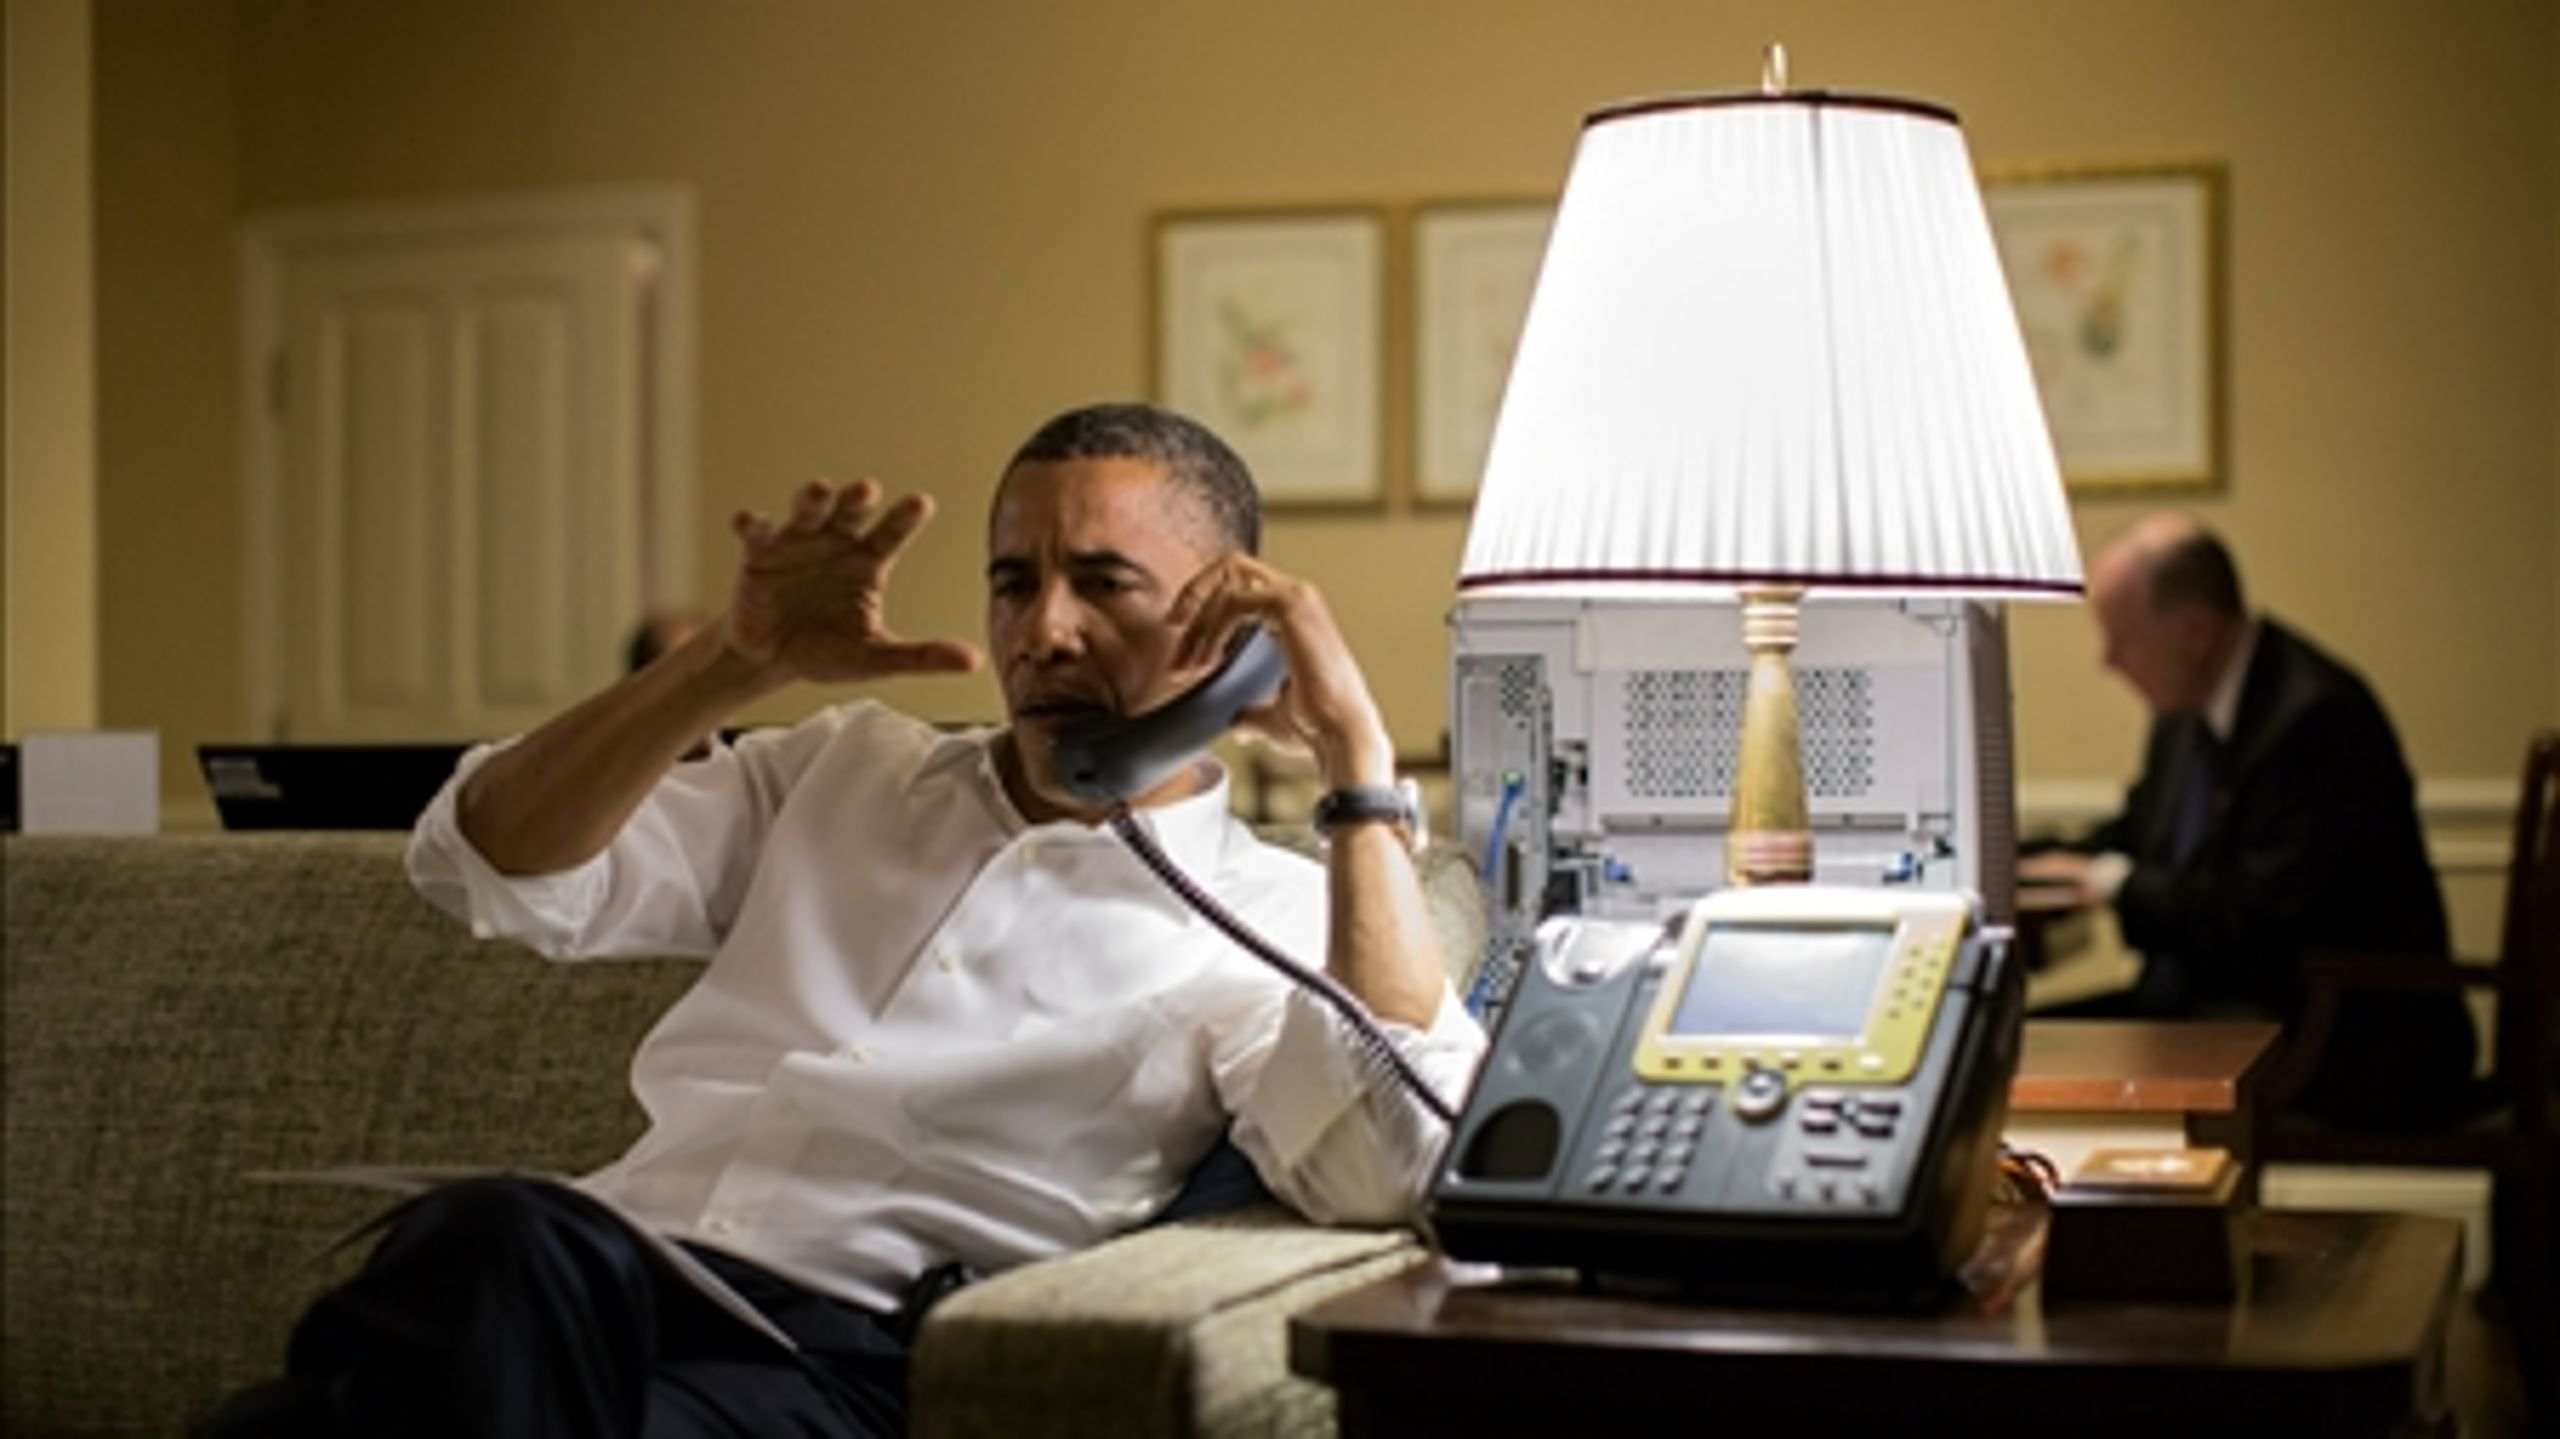 Præsident Obama har tilbragt en hel del tid i telefonen den seneste tid med forhandlinger i
Mellemøsten og på hjemmefronten med republikanerne.